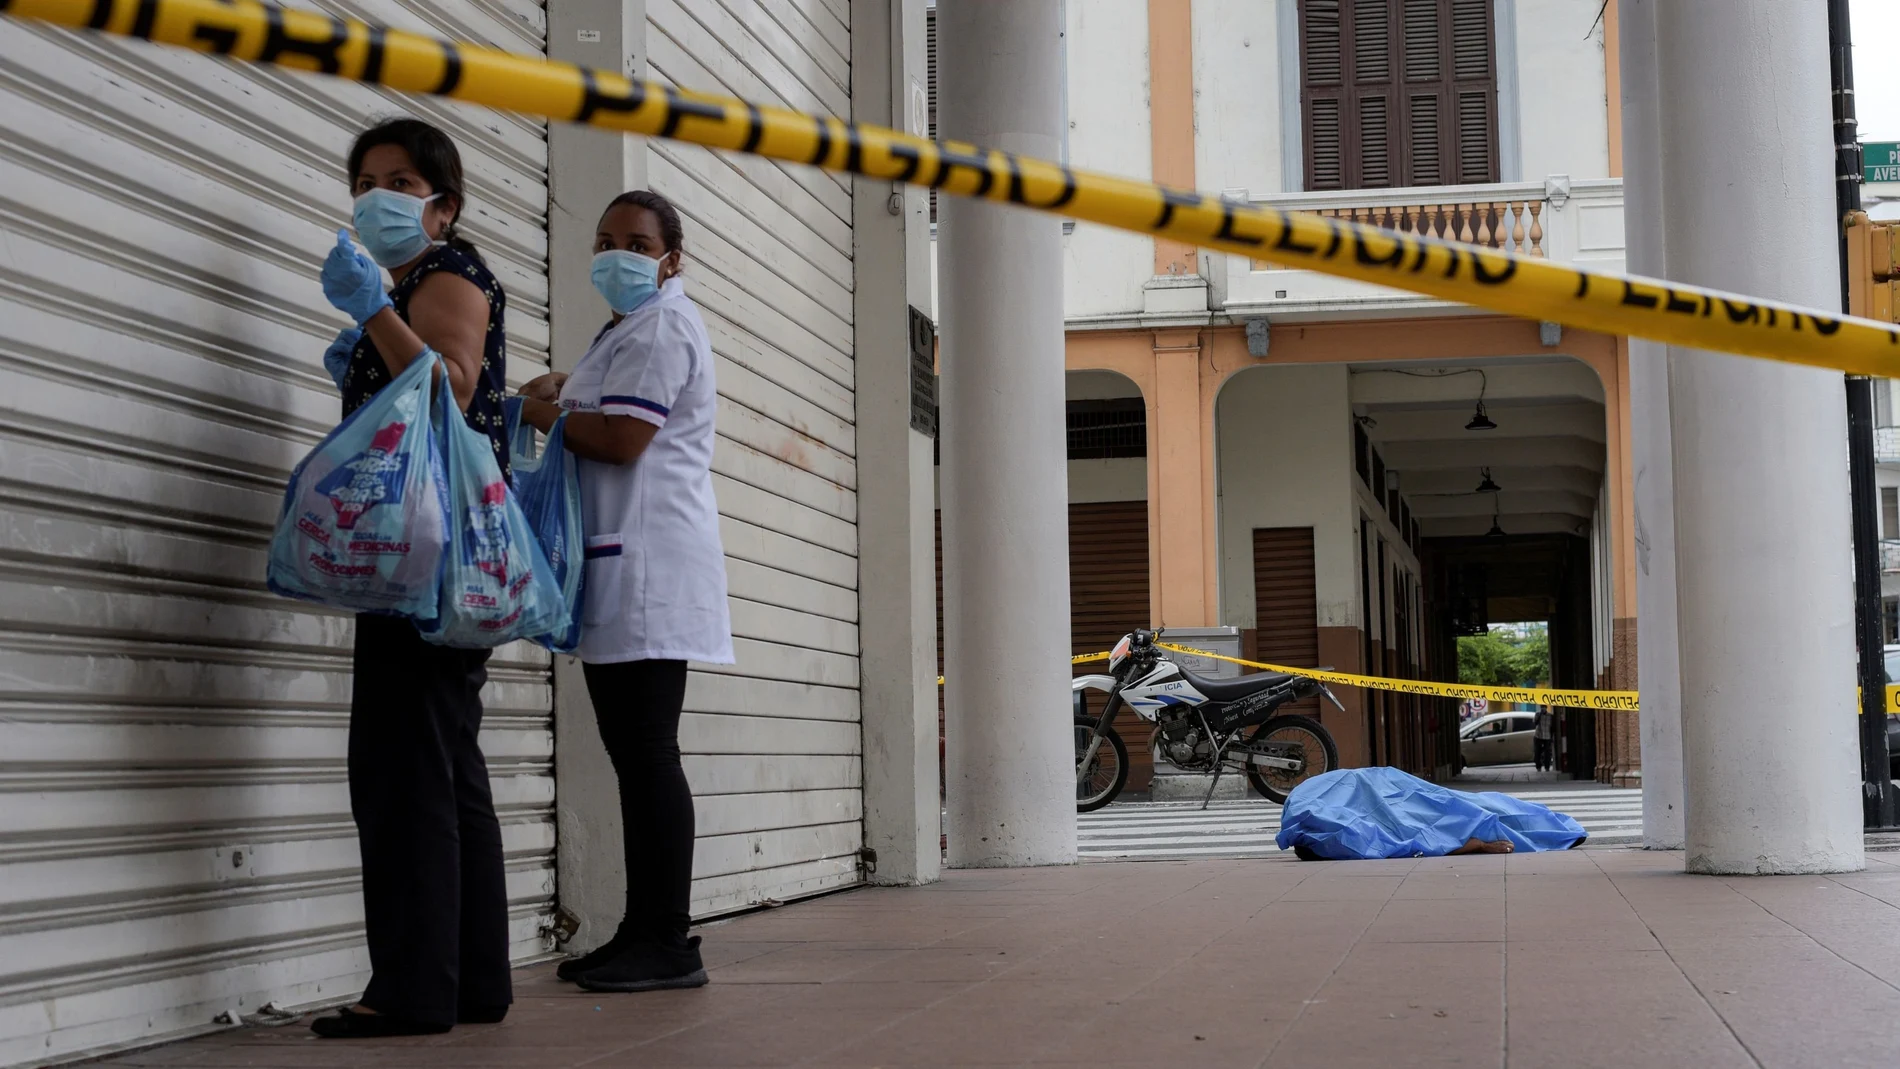 El cadaver de un hombre que colapso en una calle de Guayaquil, Ecuador custodiado por dos mujeres a la espera de los servicios funerarios.